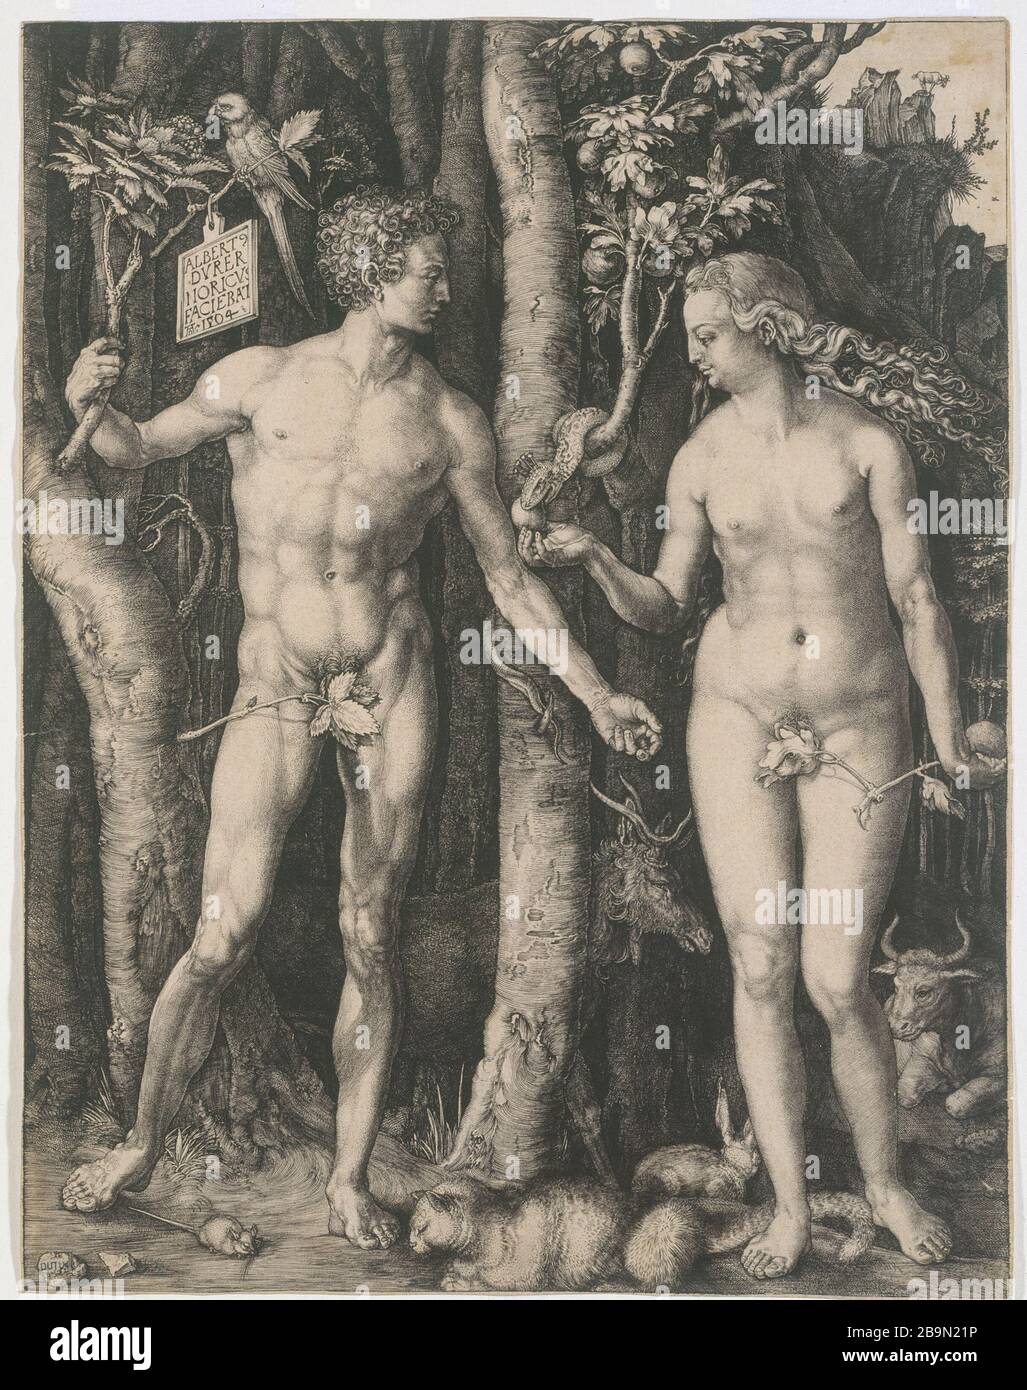 ADAM ET EVE Albrecht Dürer (1471-1528). "Adam et Eve". Tiefdruck, XVIème siècle, B 1. Musée des Beaux-Arts de la Ville de Paris, Petit Palais. Stockfoto